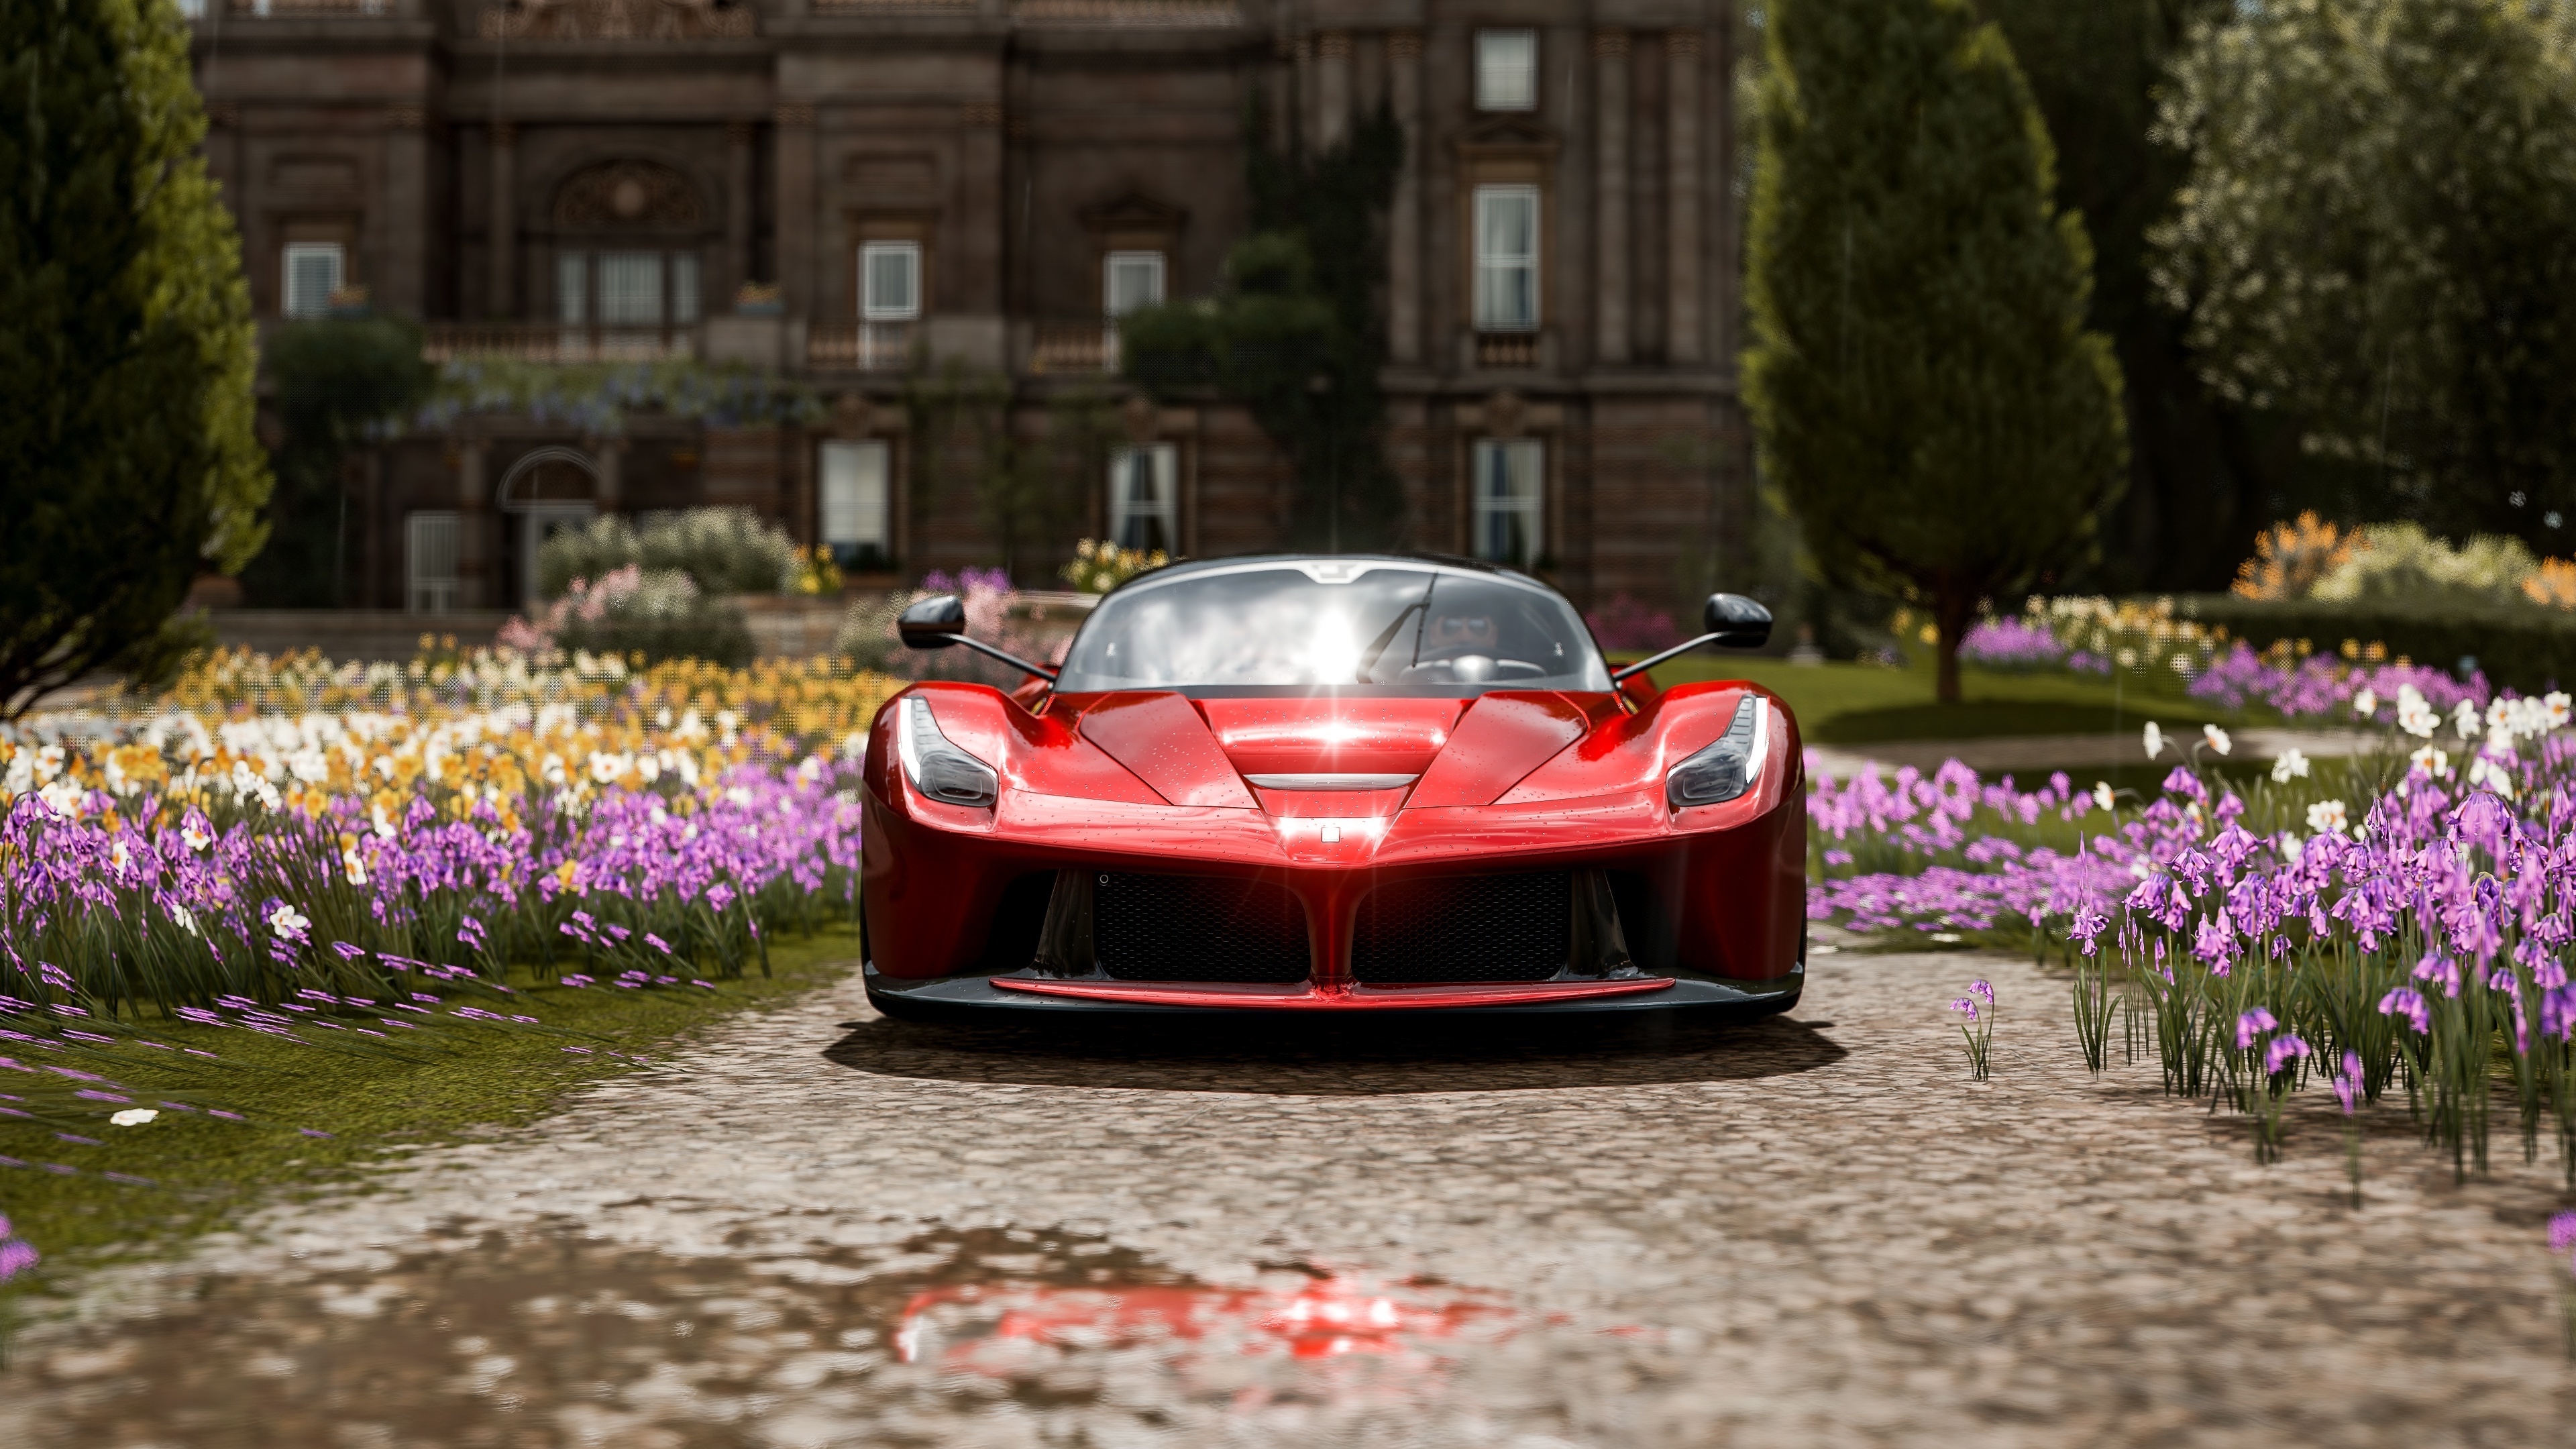 Ferrari Laferrari, Forza Horizon 4, Video Game, Wallpaper - Laferrari Forza Horizon 4 - HD Wallpaper 